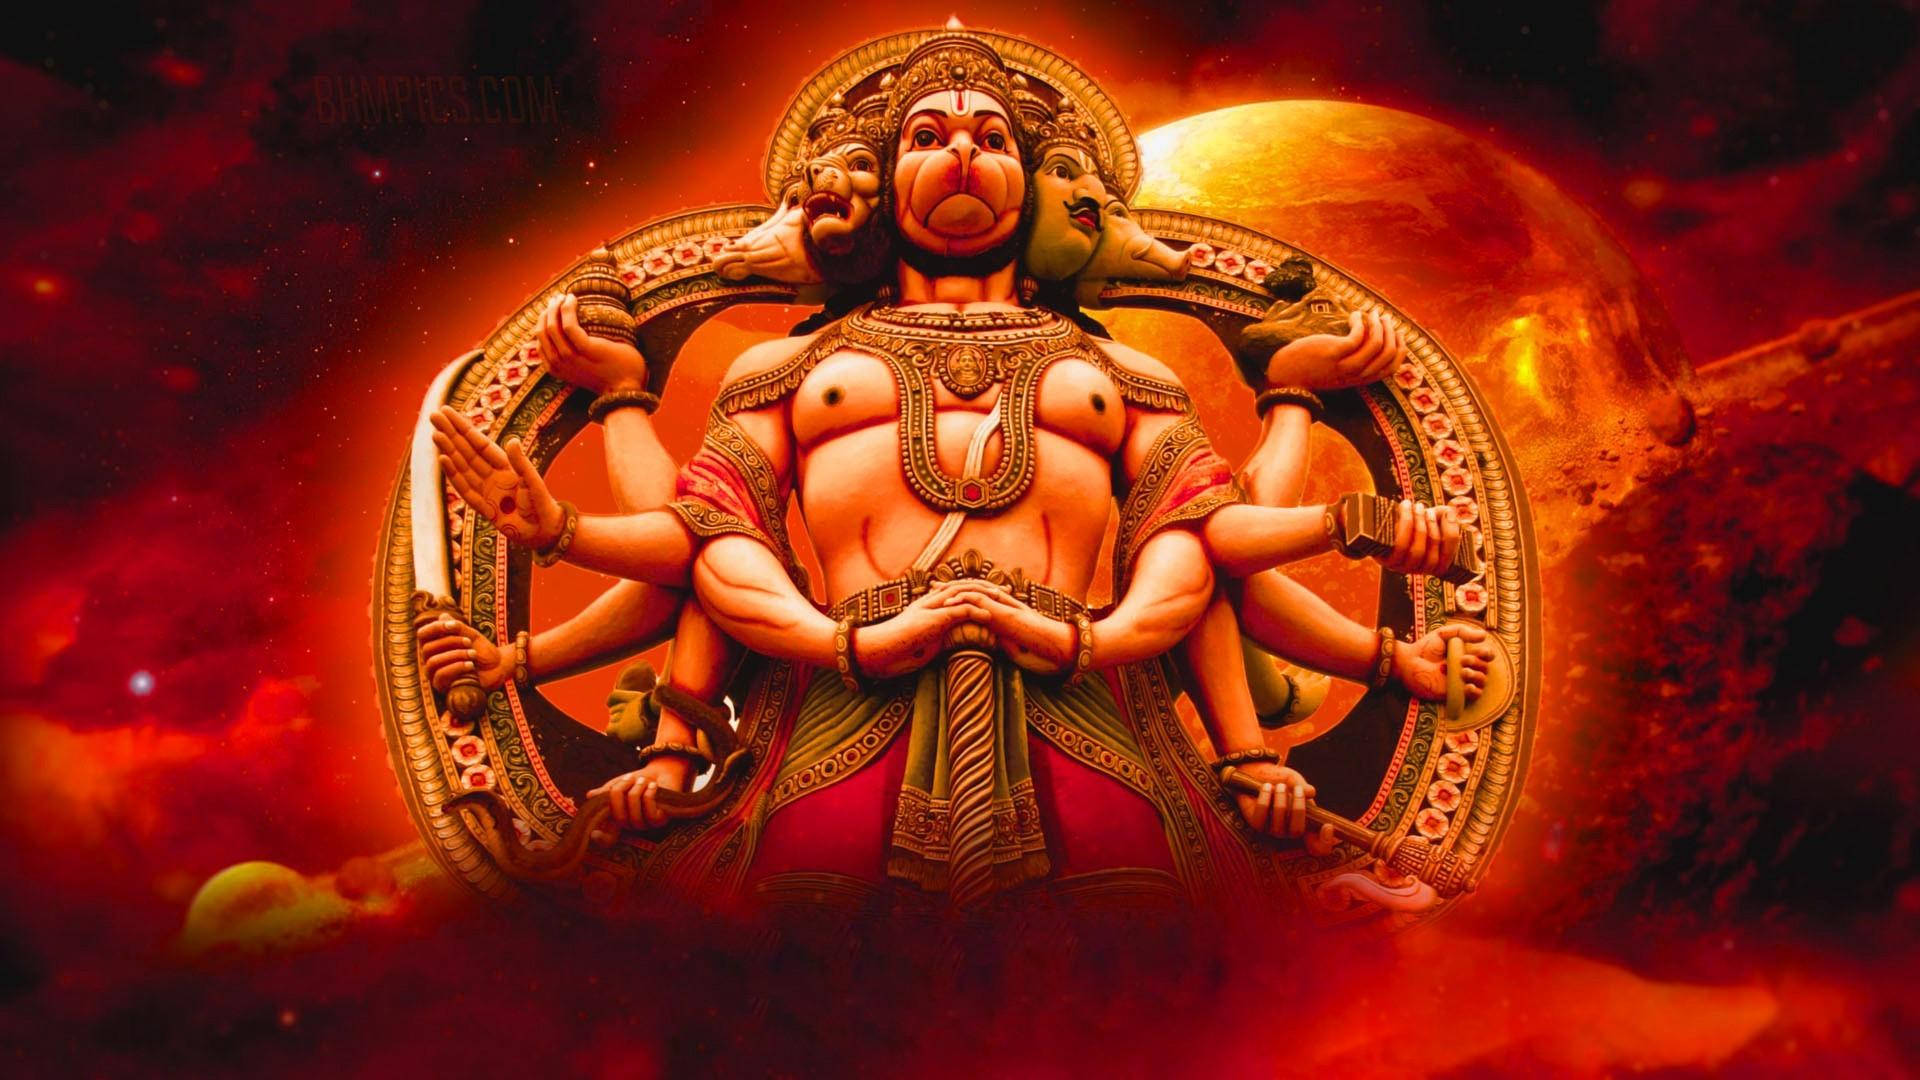 Free Lord Hanuman Hd Wallpaper Downloads, [100+] Lord Hanuman Hd Wallpapers  for FREE 